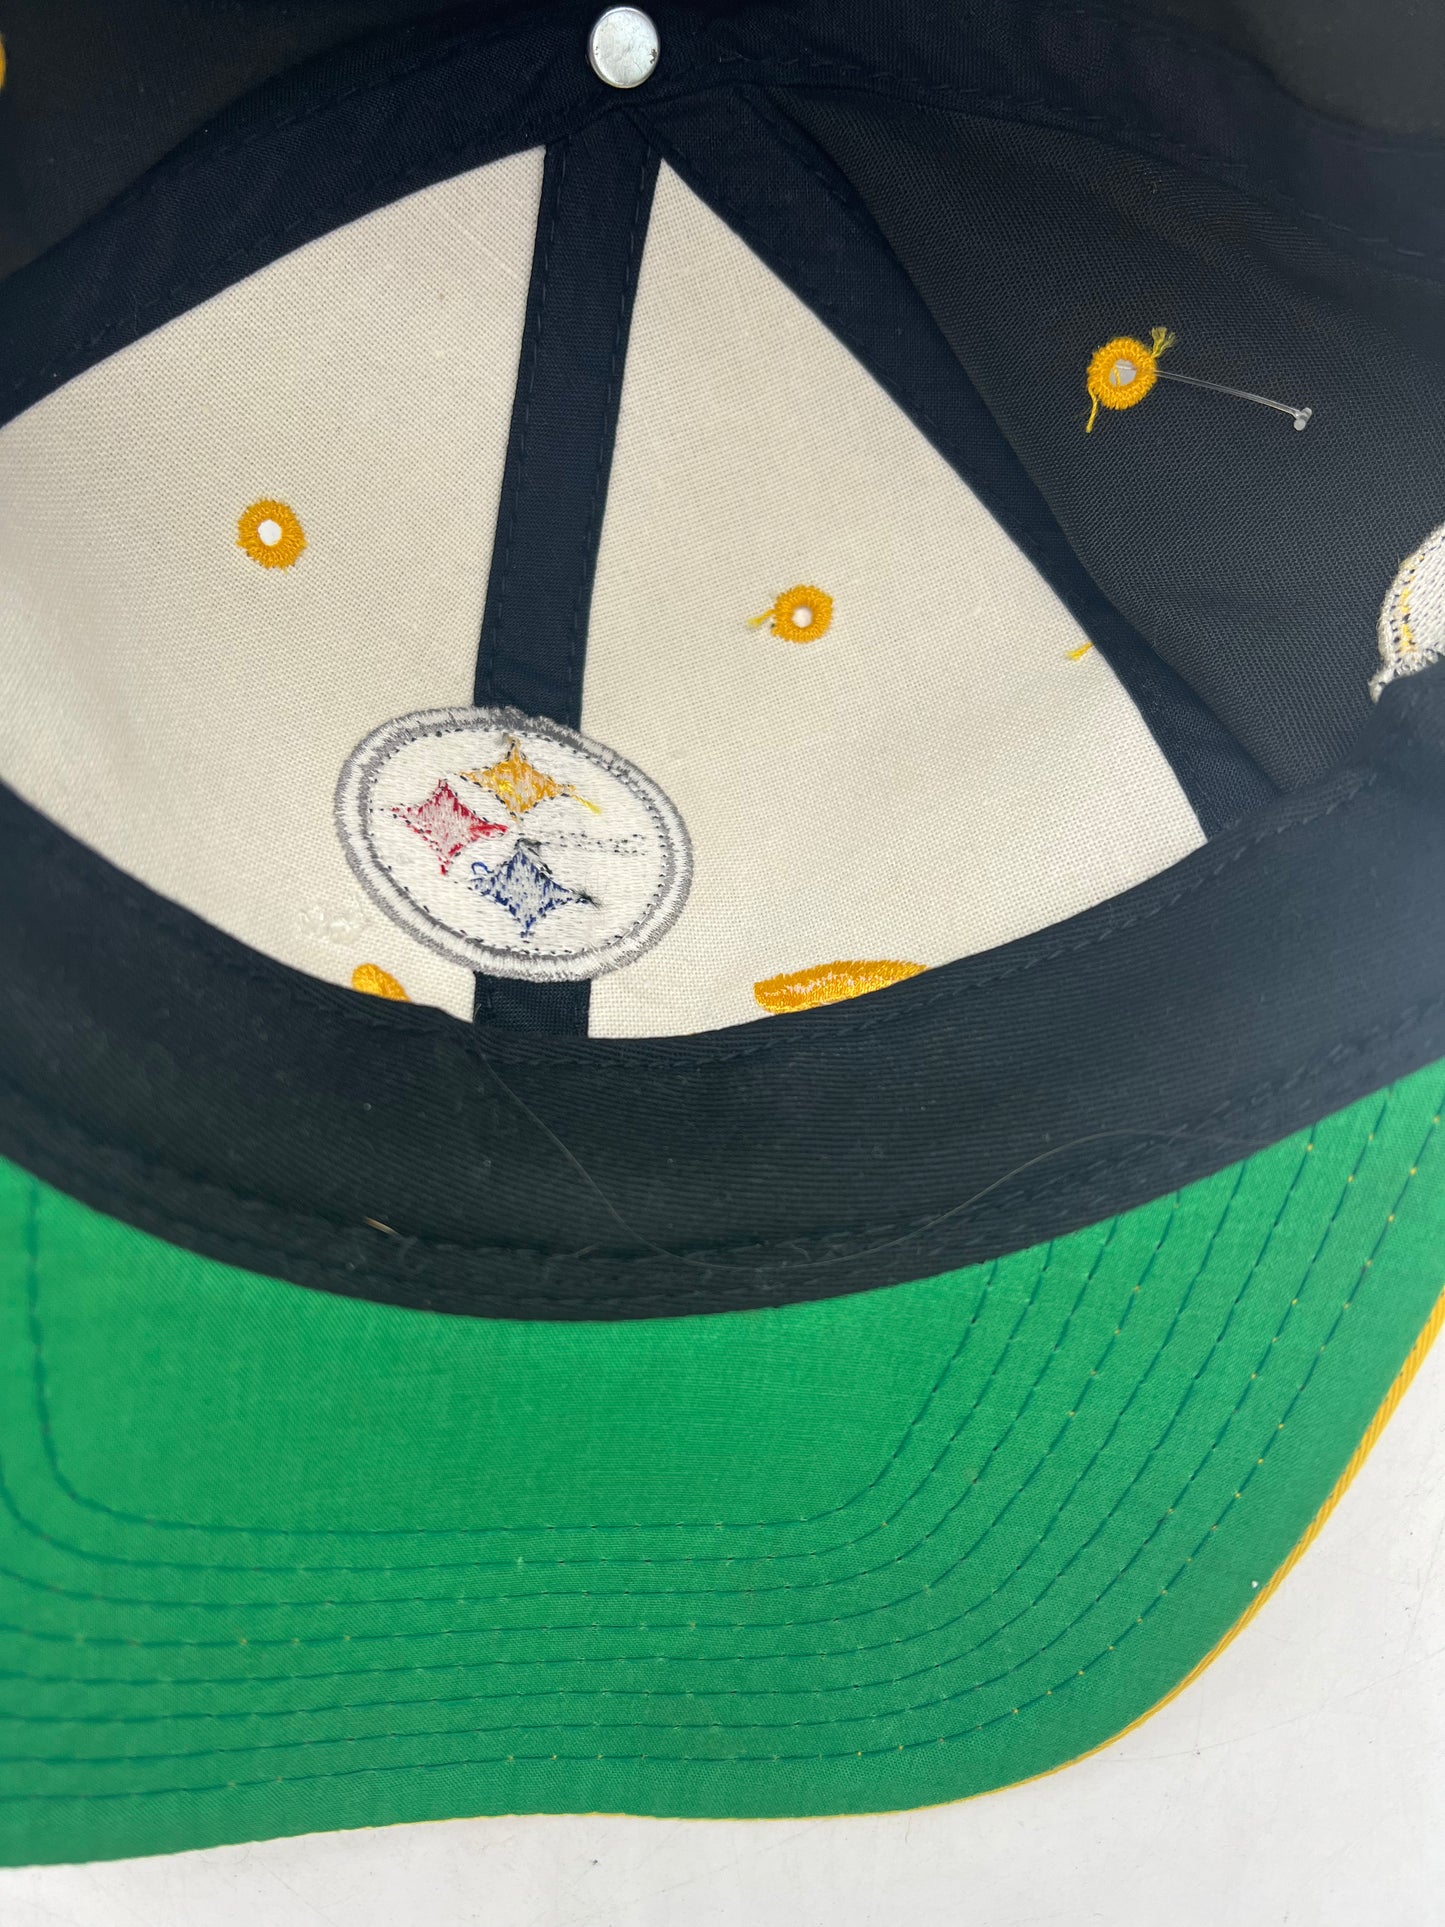 VTG Pittsburgh Steelers Snapback Hat